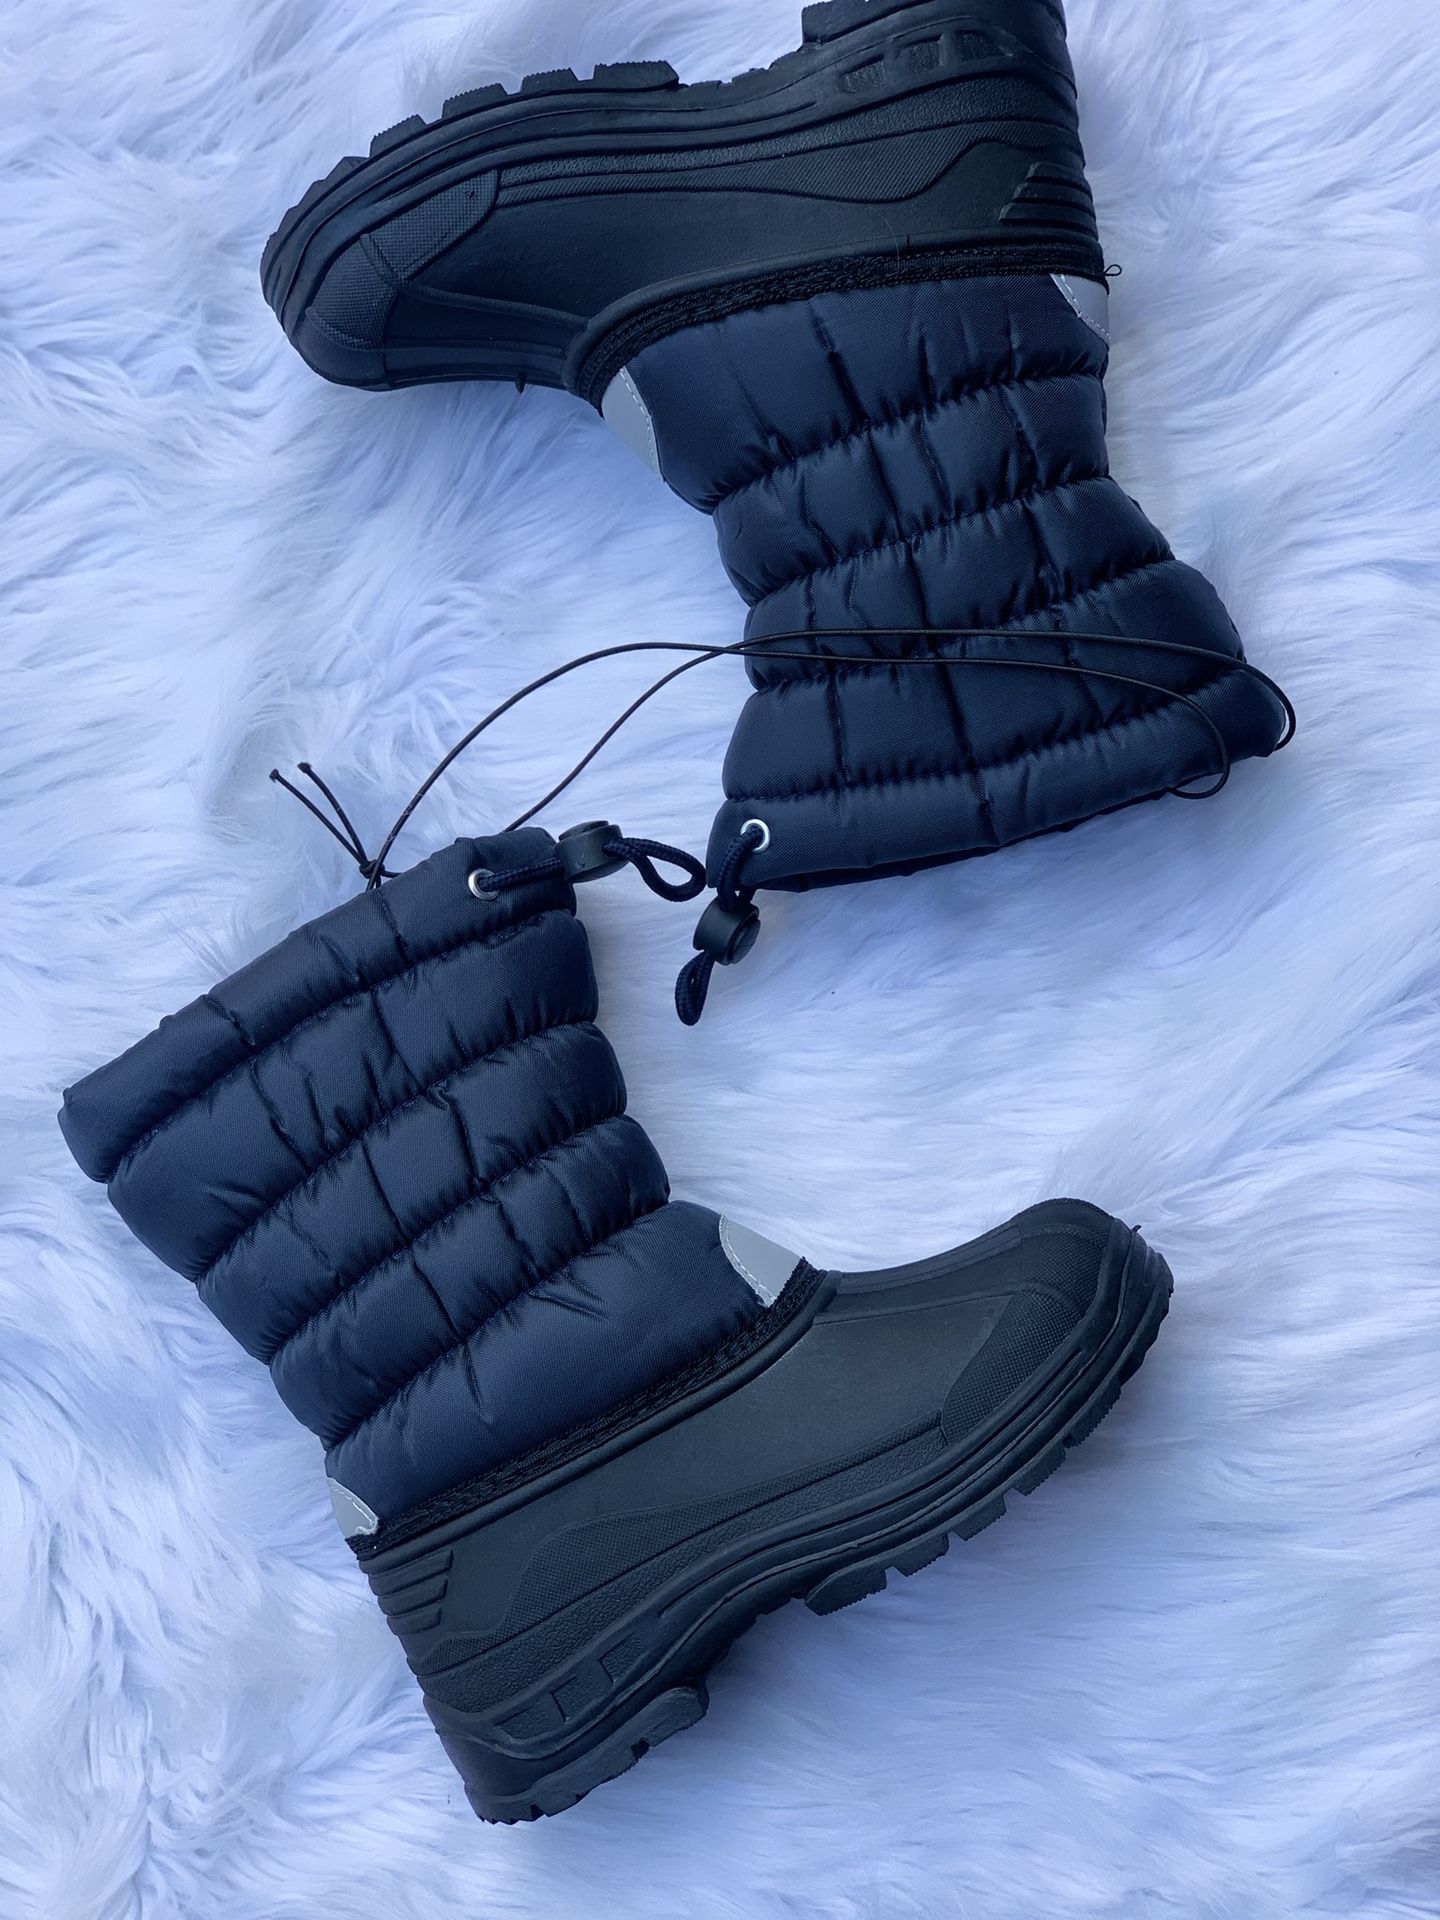 Snow boots for kids / kids snow boots/ botas para la nieve de niños sizes 9,10,11,12,13,1,2,3,4, ... $25 each pair